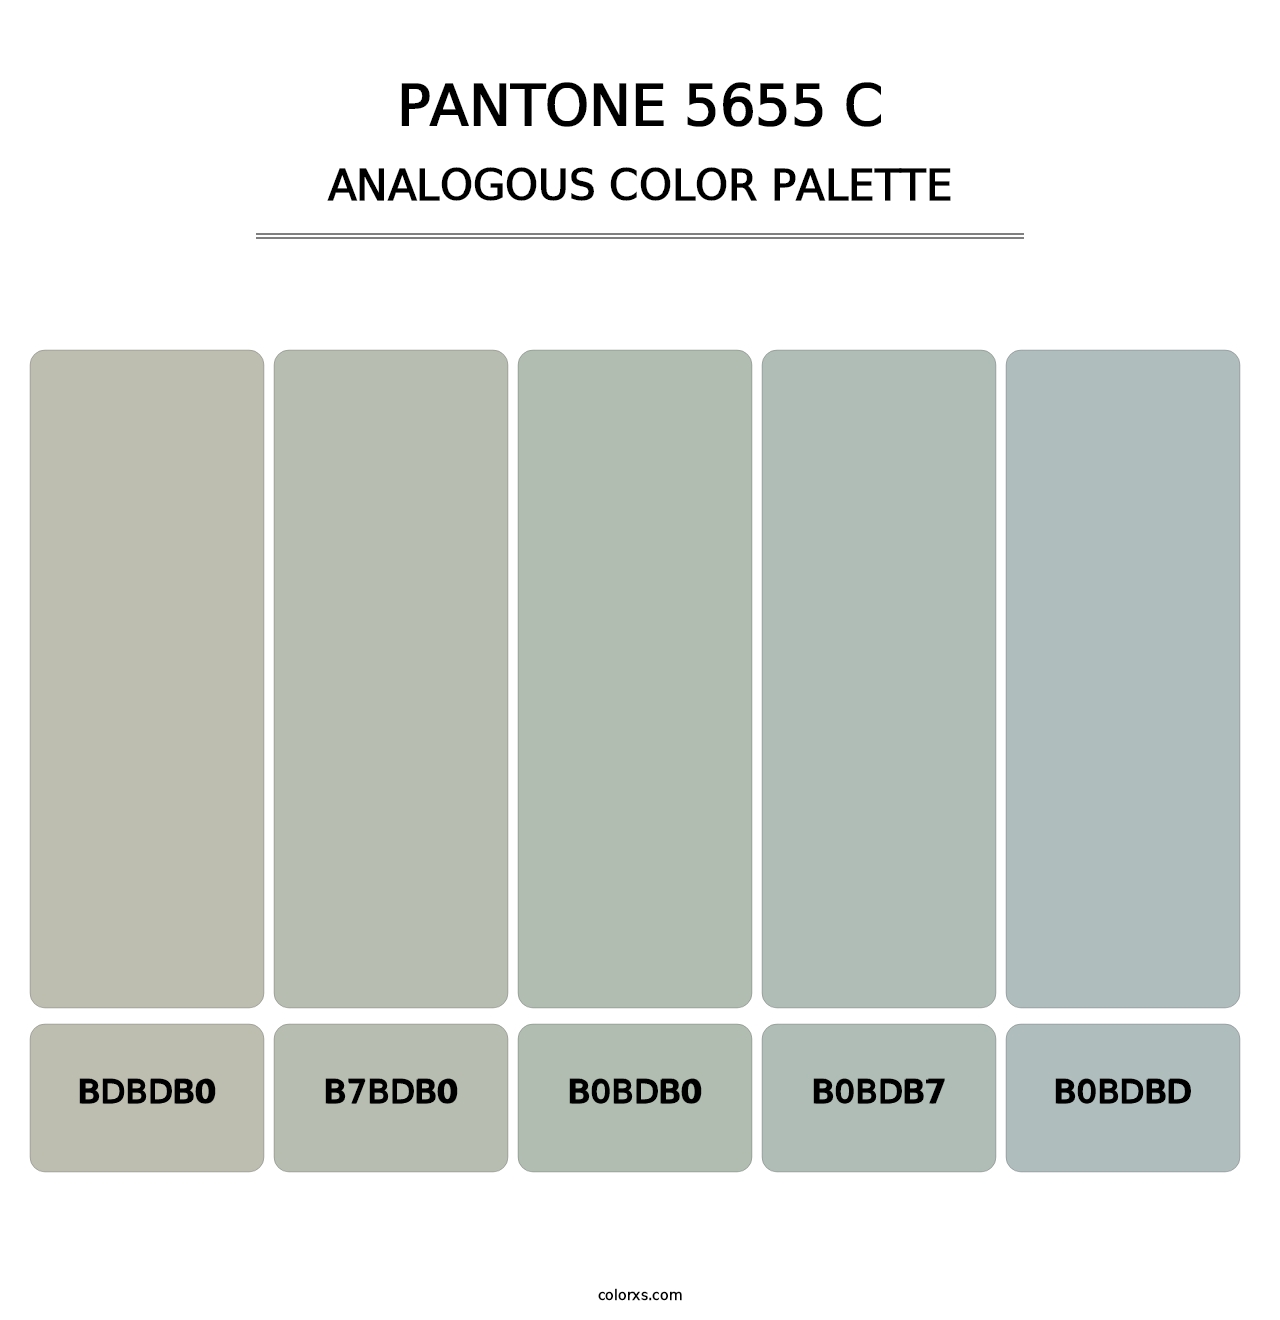 PANTONE 5655 C - Analogous Color Palette